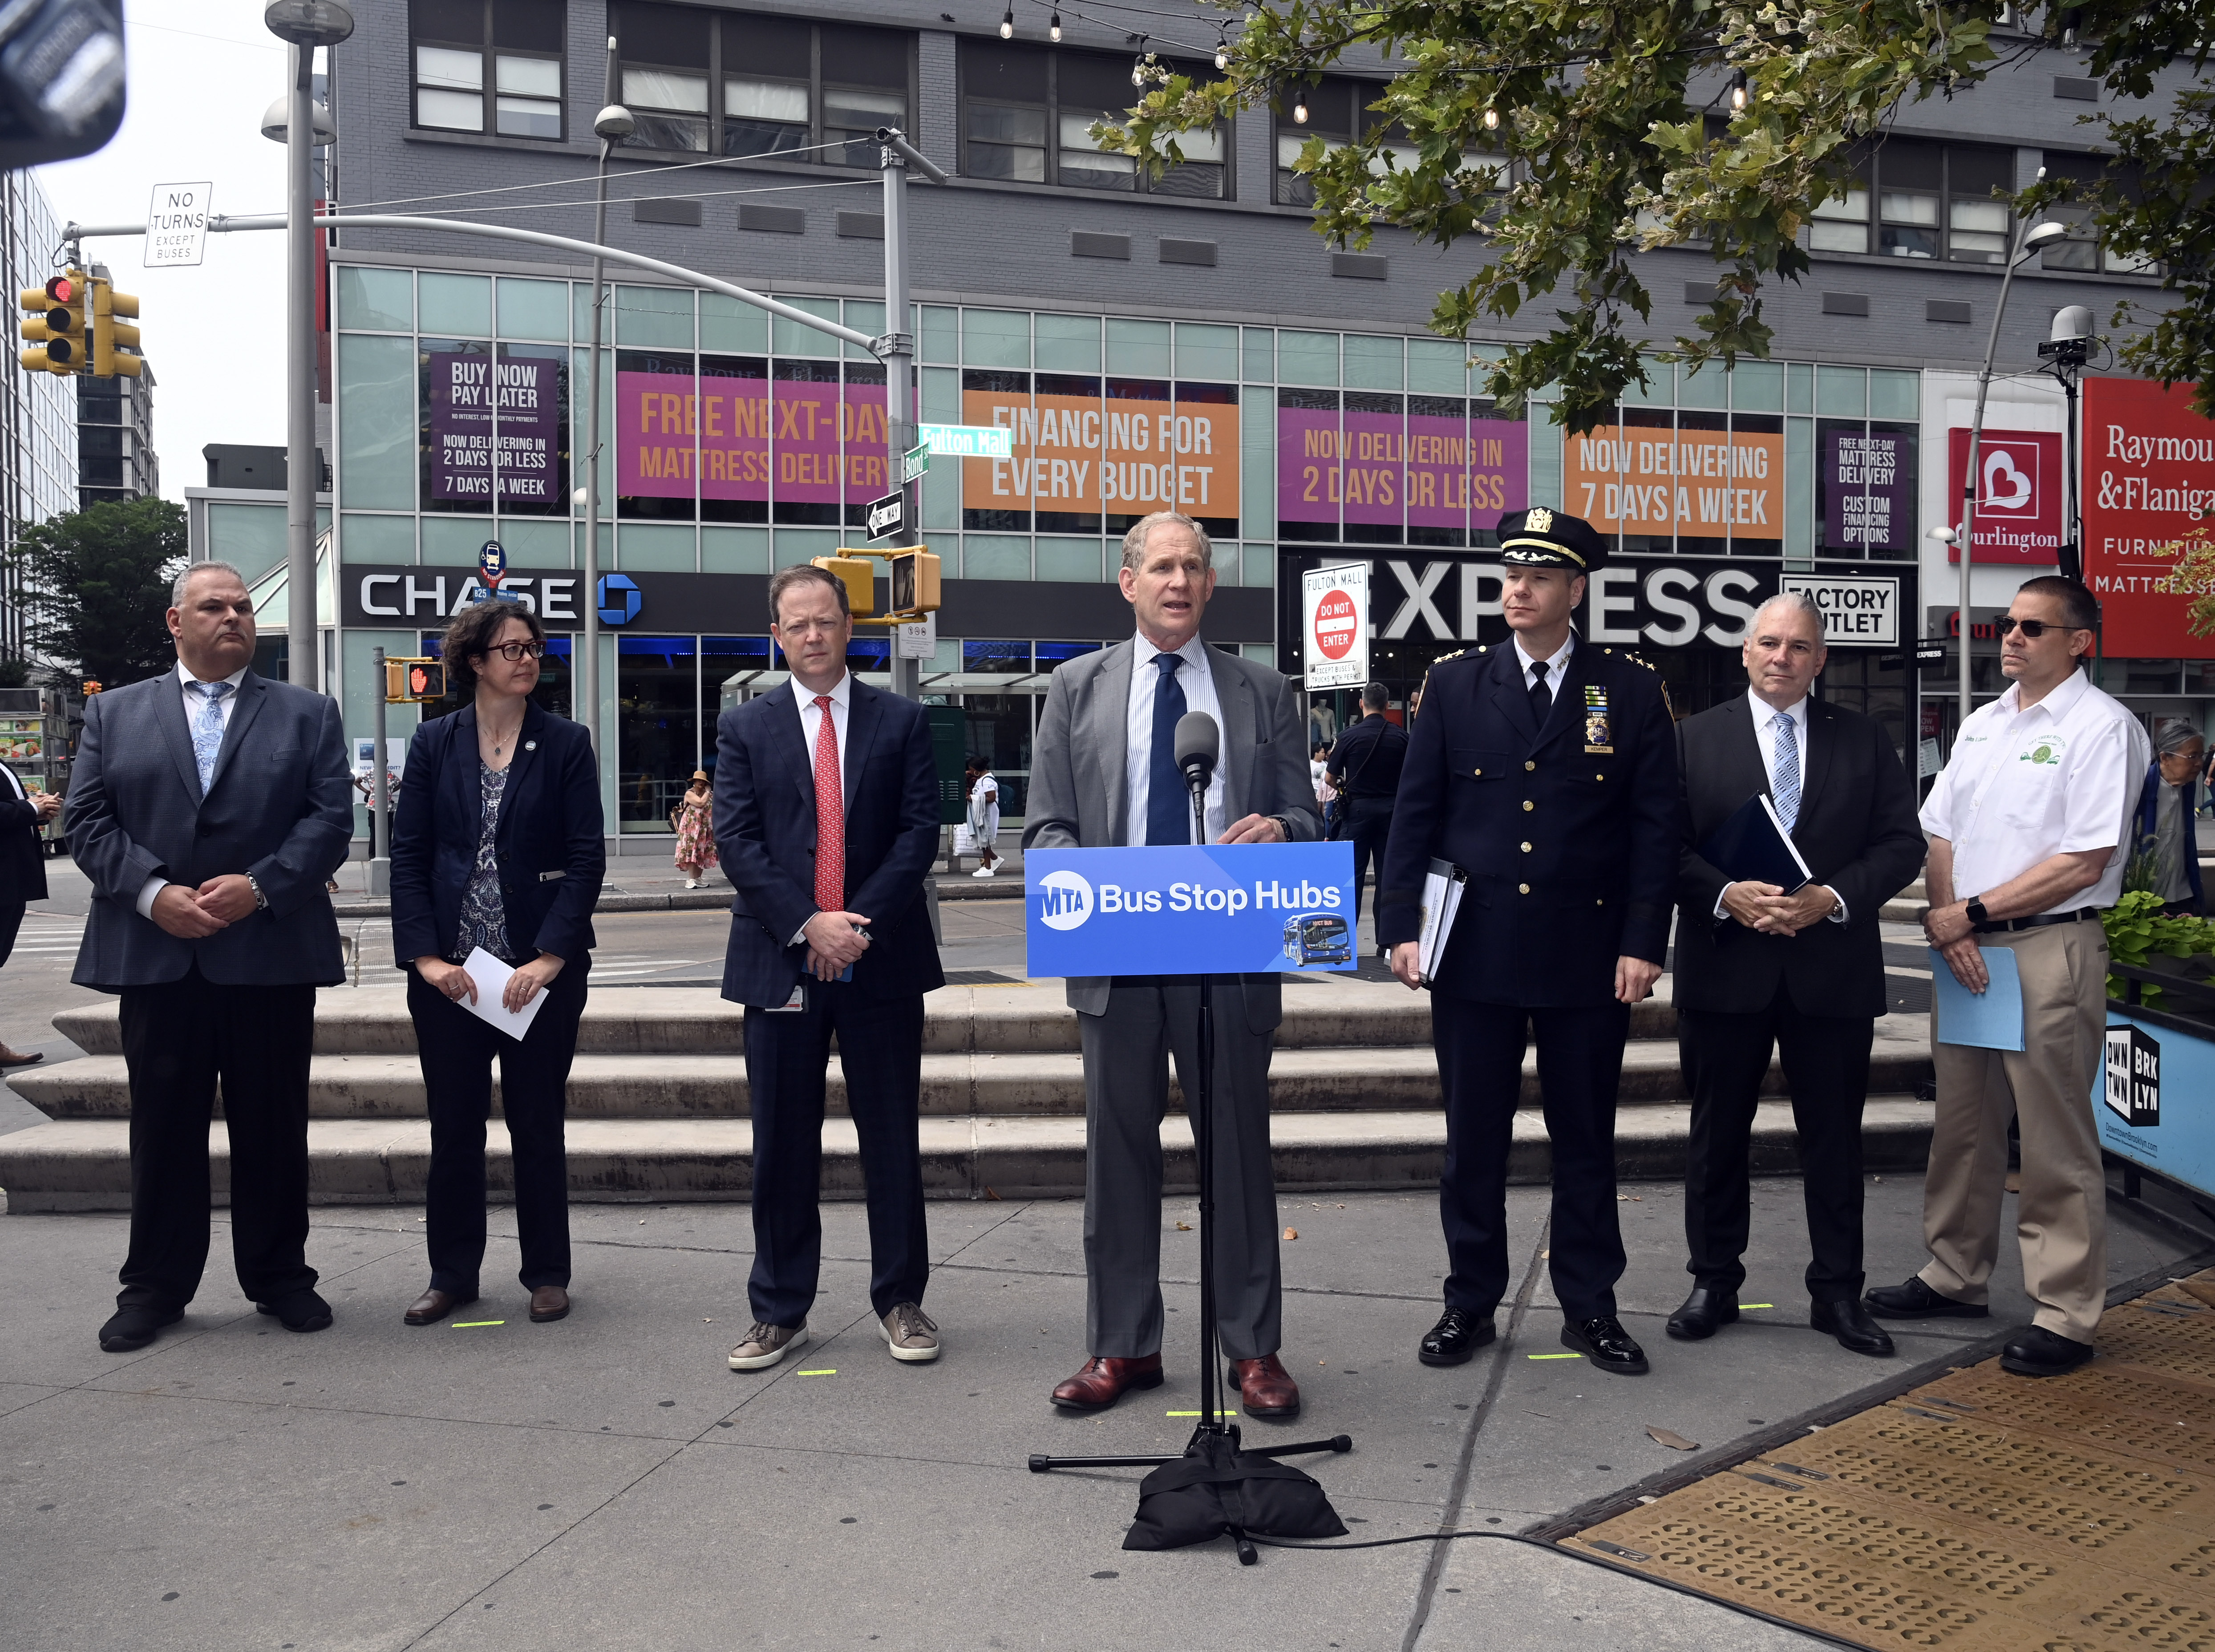 MTA EAGLE Teams Begin Bus Stop Hub Approach